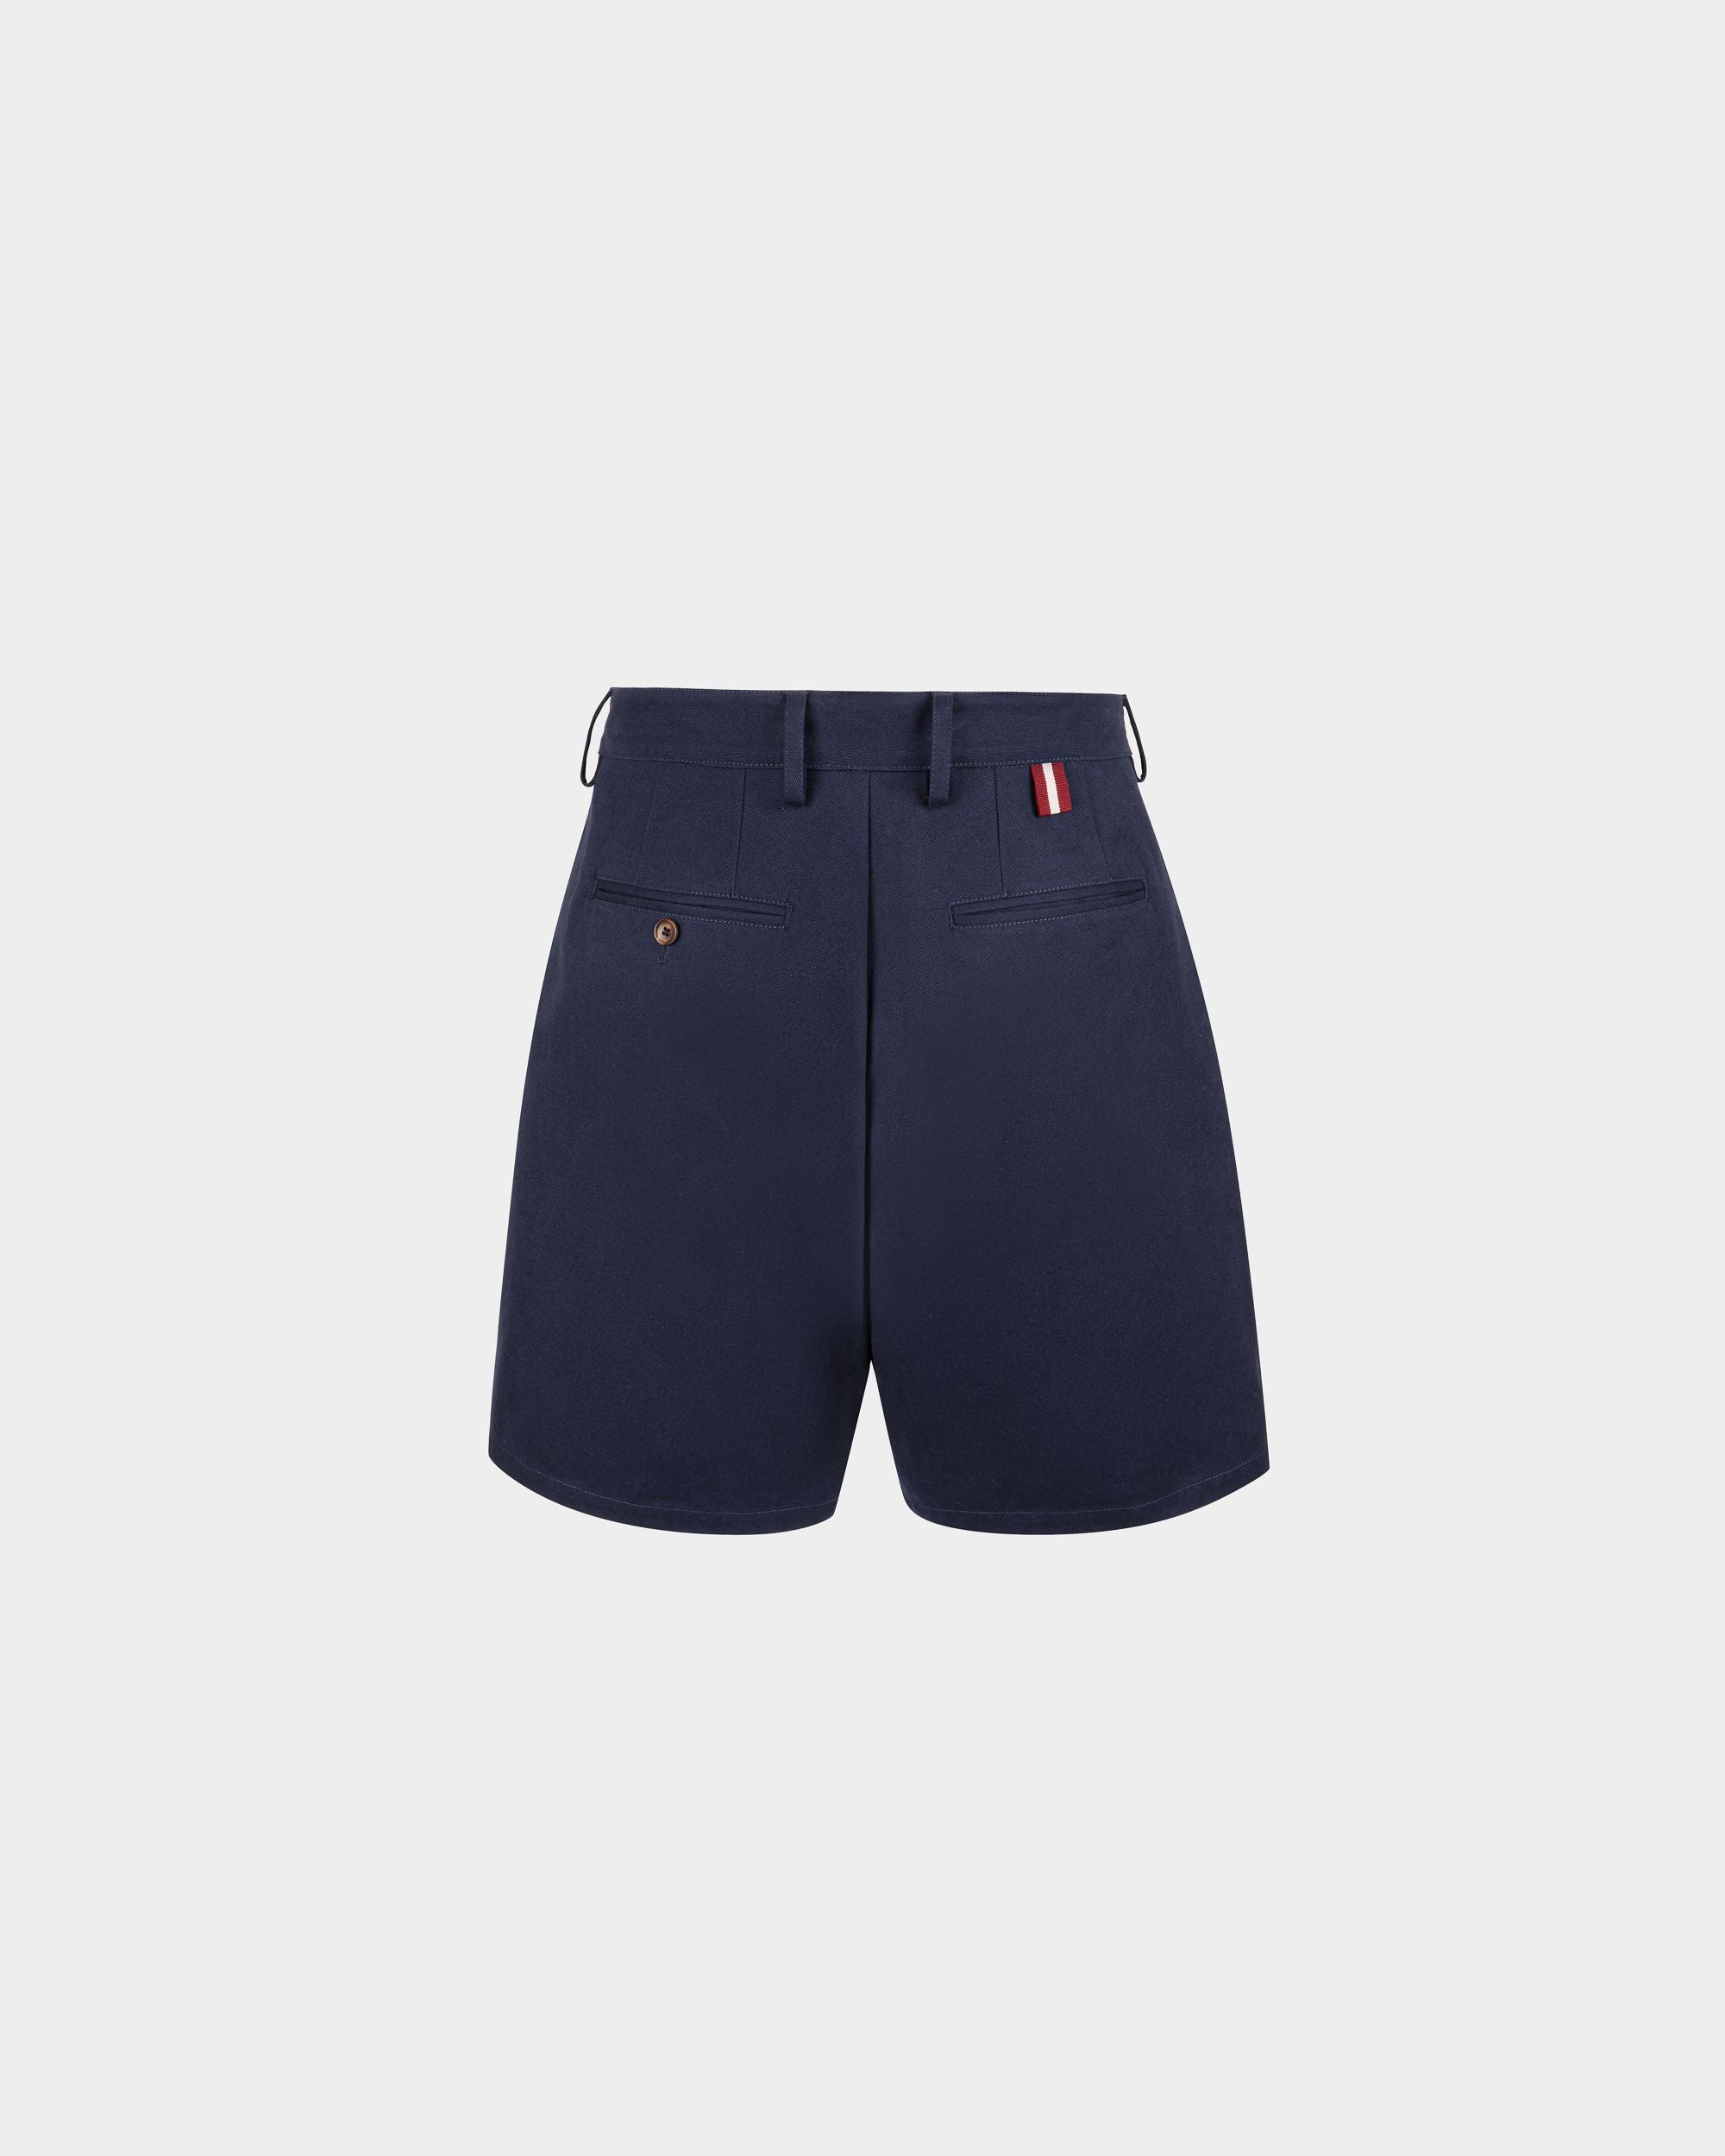 Shorts für Herren aus marineblauer Baumwolle | Bally | Still Life Rückseite